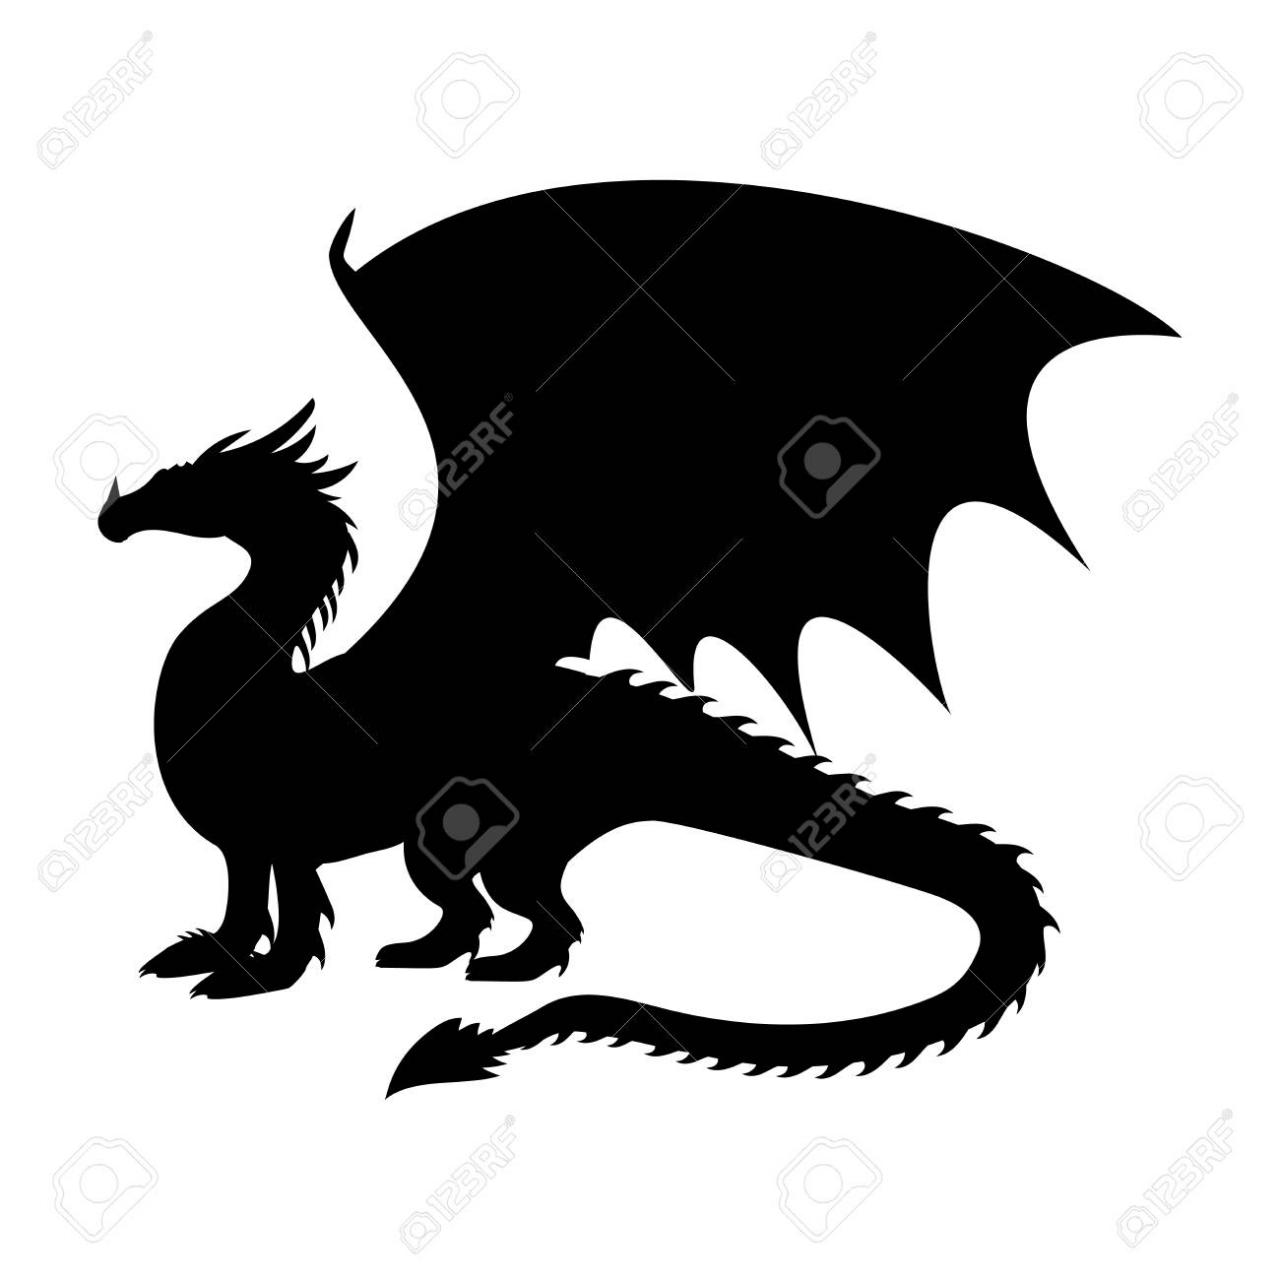 Dragón fantasía silueta símbolo mitología fantasía -, dibujos de La Silueta De Un Dragón, como dibujar La Silueta De Un Dragón paso a paso